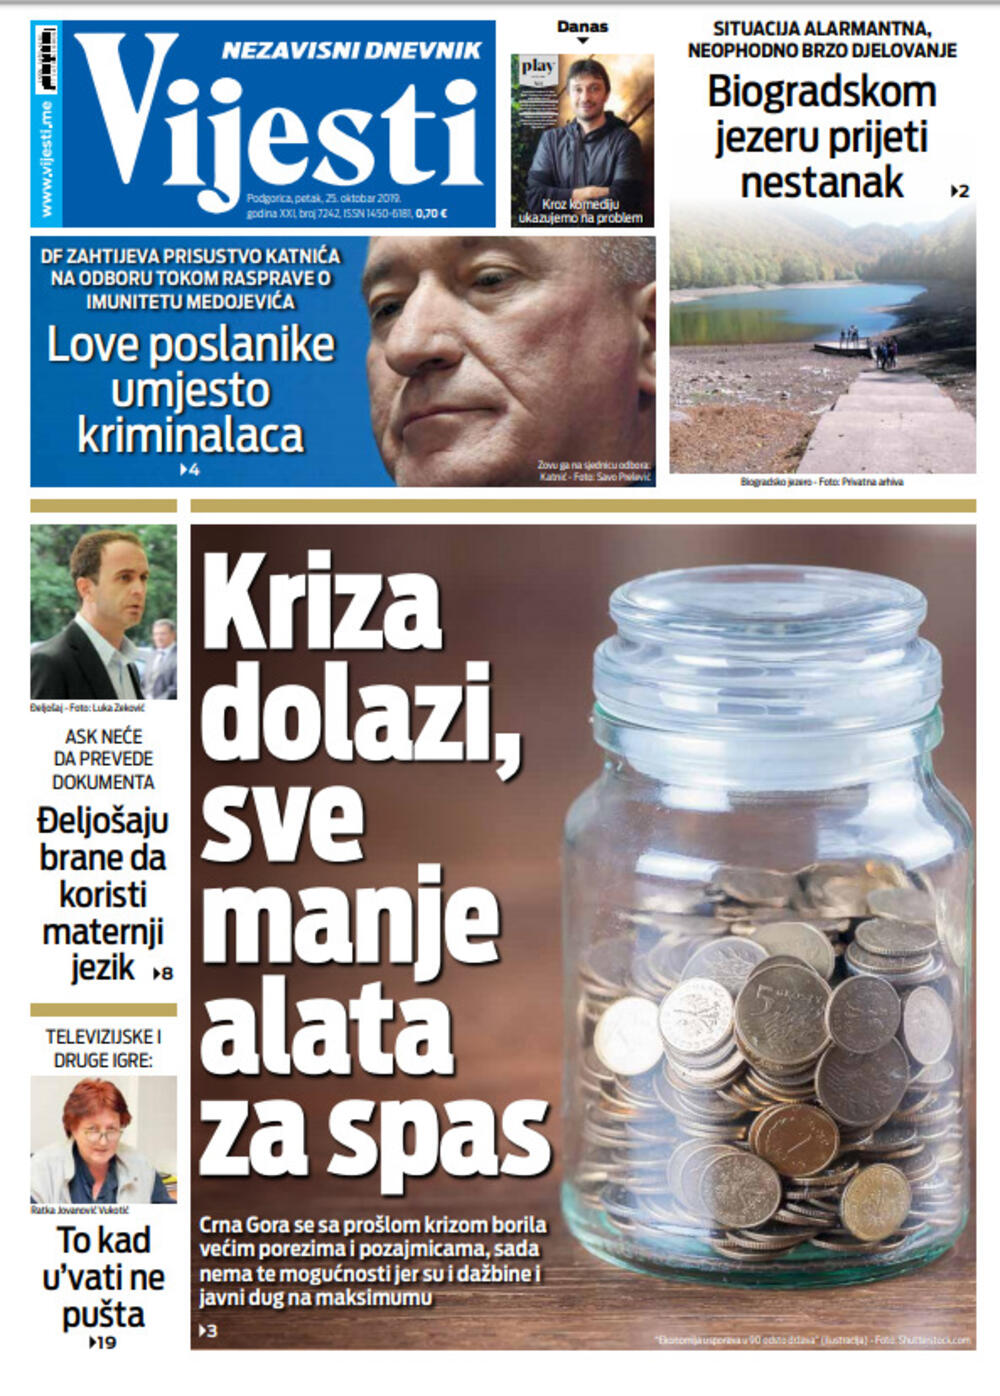 Naslovnica "Vijesti" 25.10., Foto: Vijesti